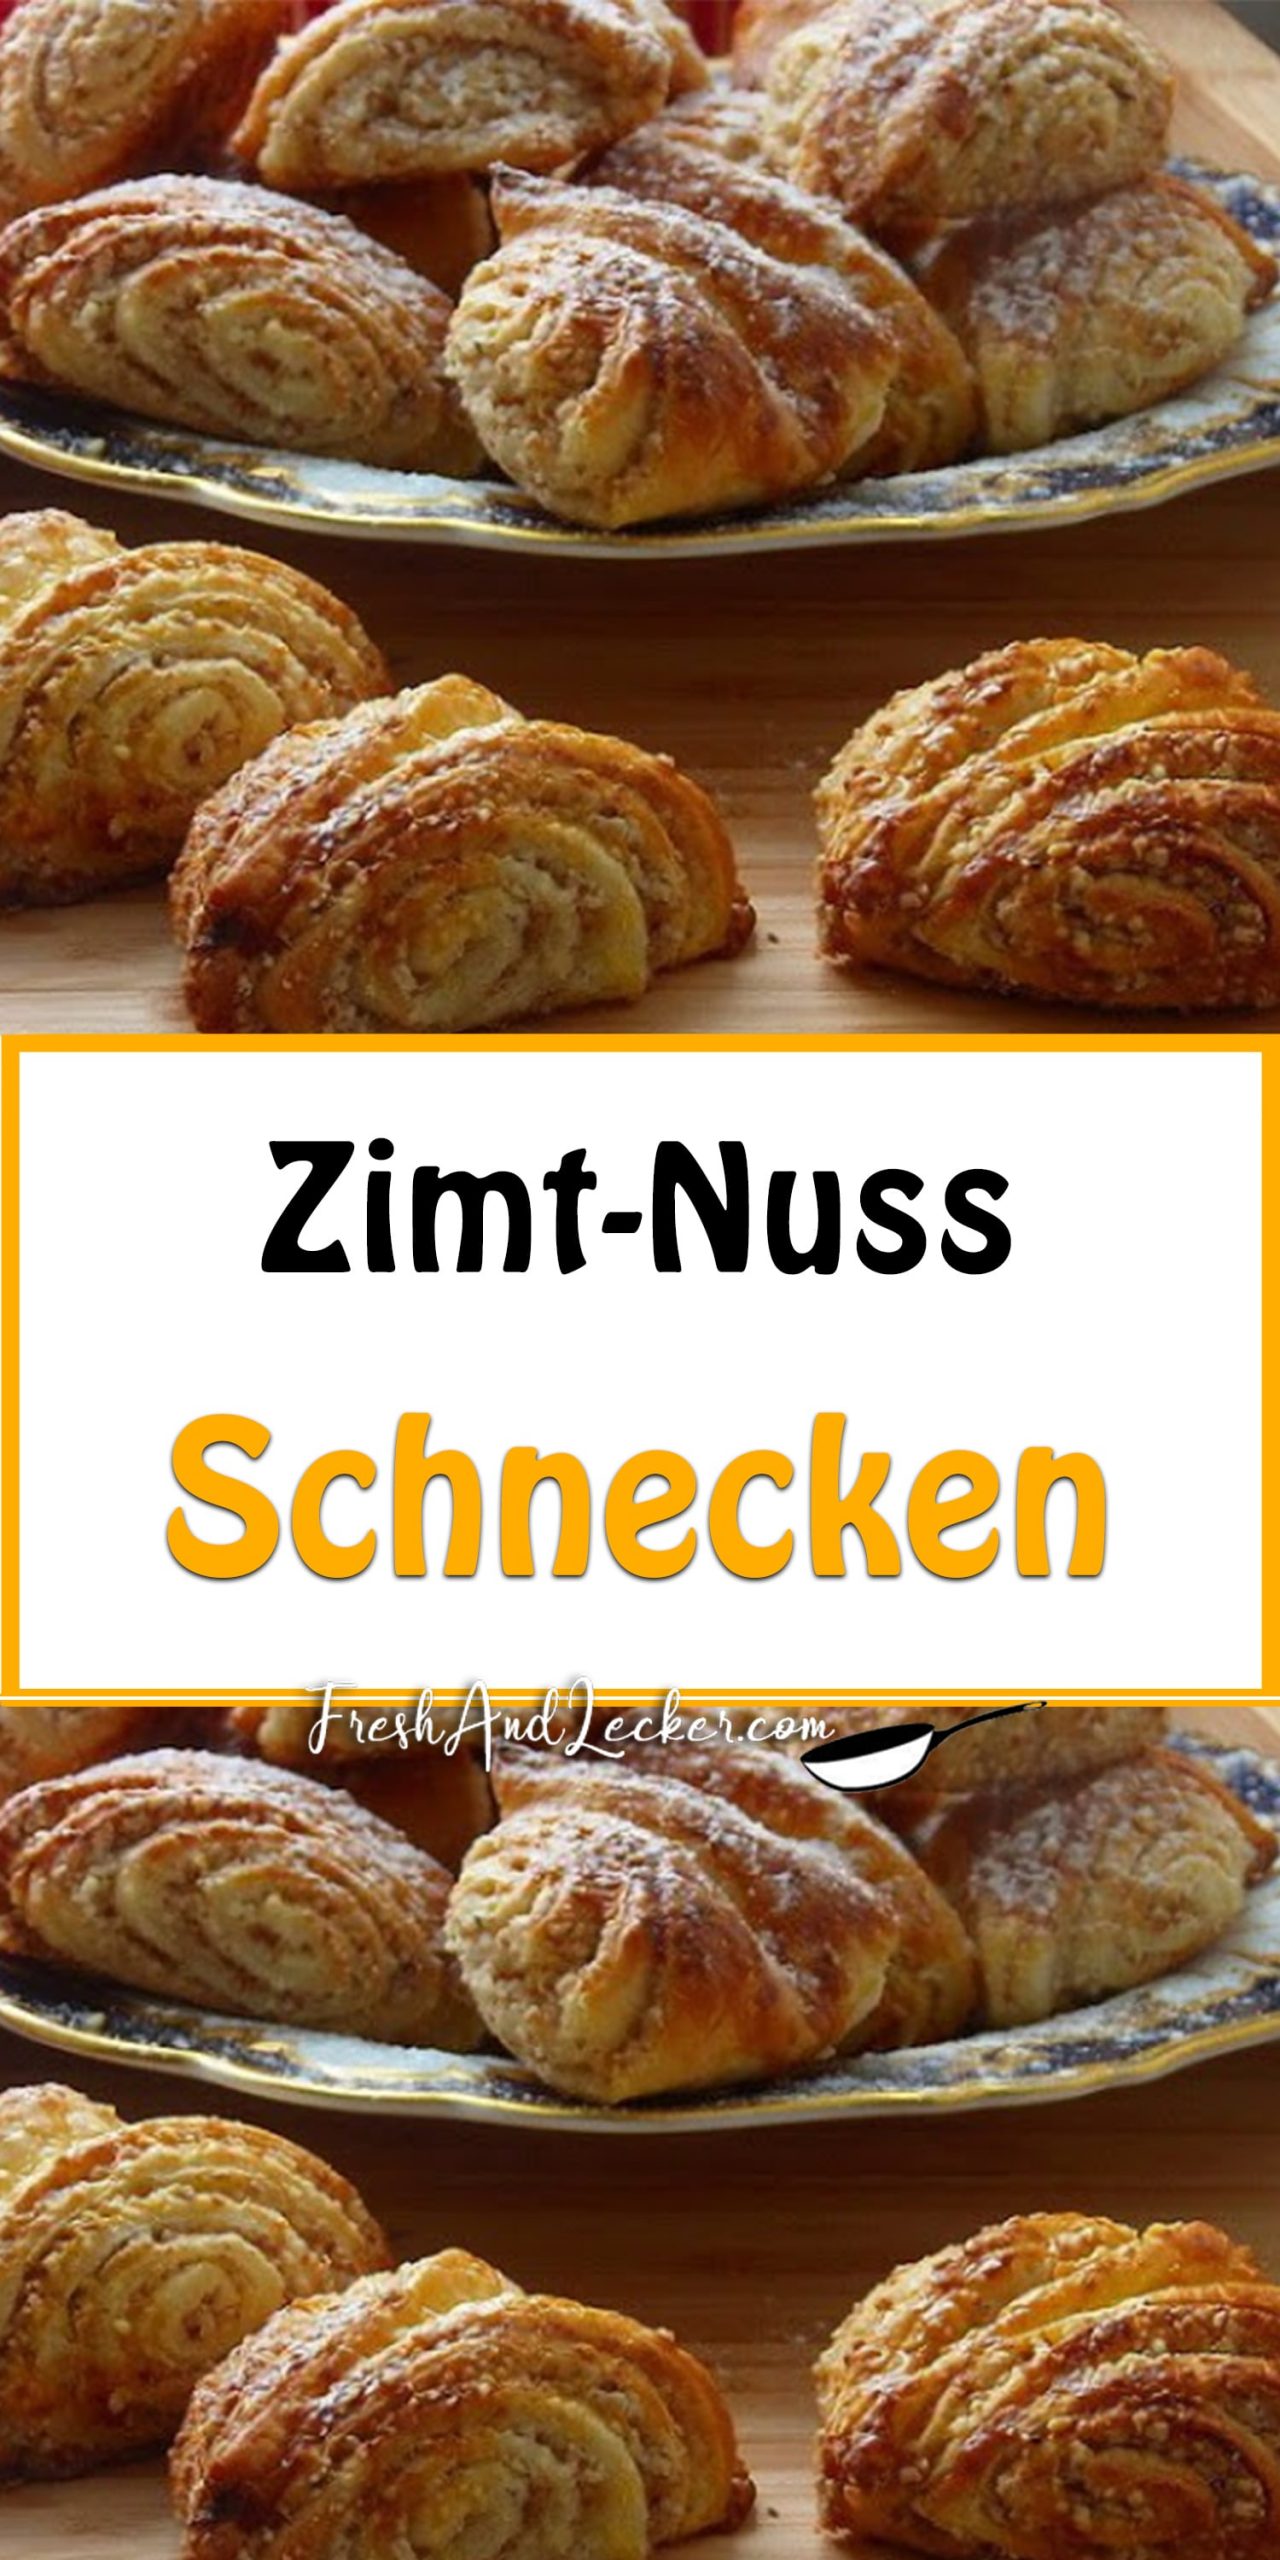 Zimt-Nuss-Schnecken - Fresh Lecker